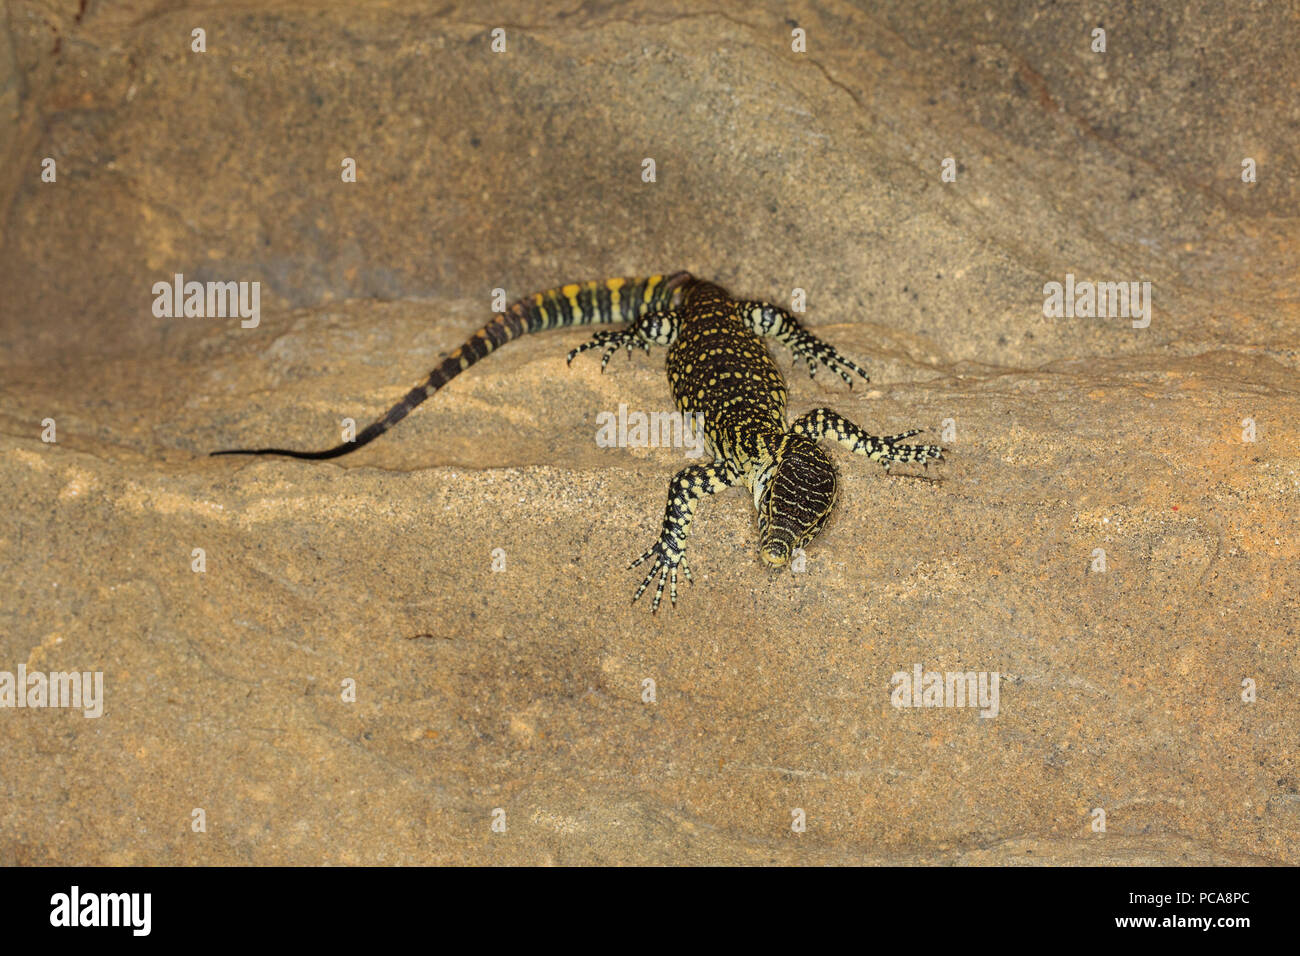 Nile monitor (Varanus niloticus) Stock Photo